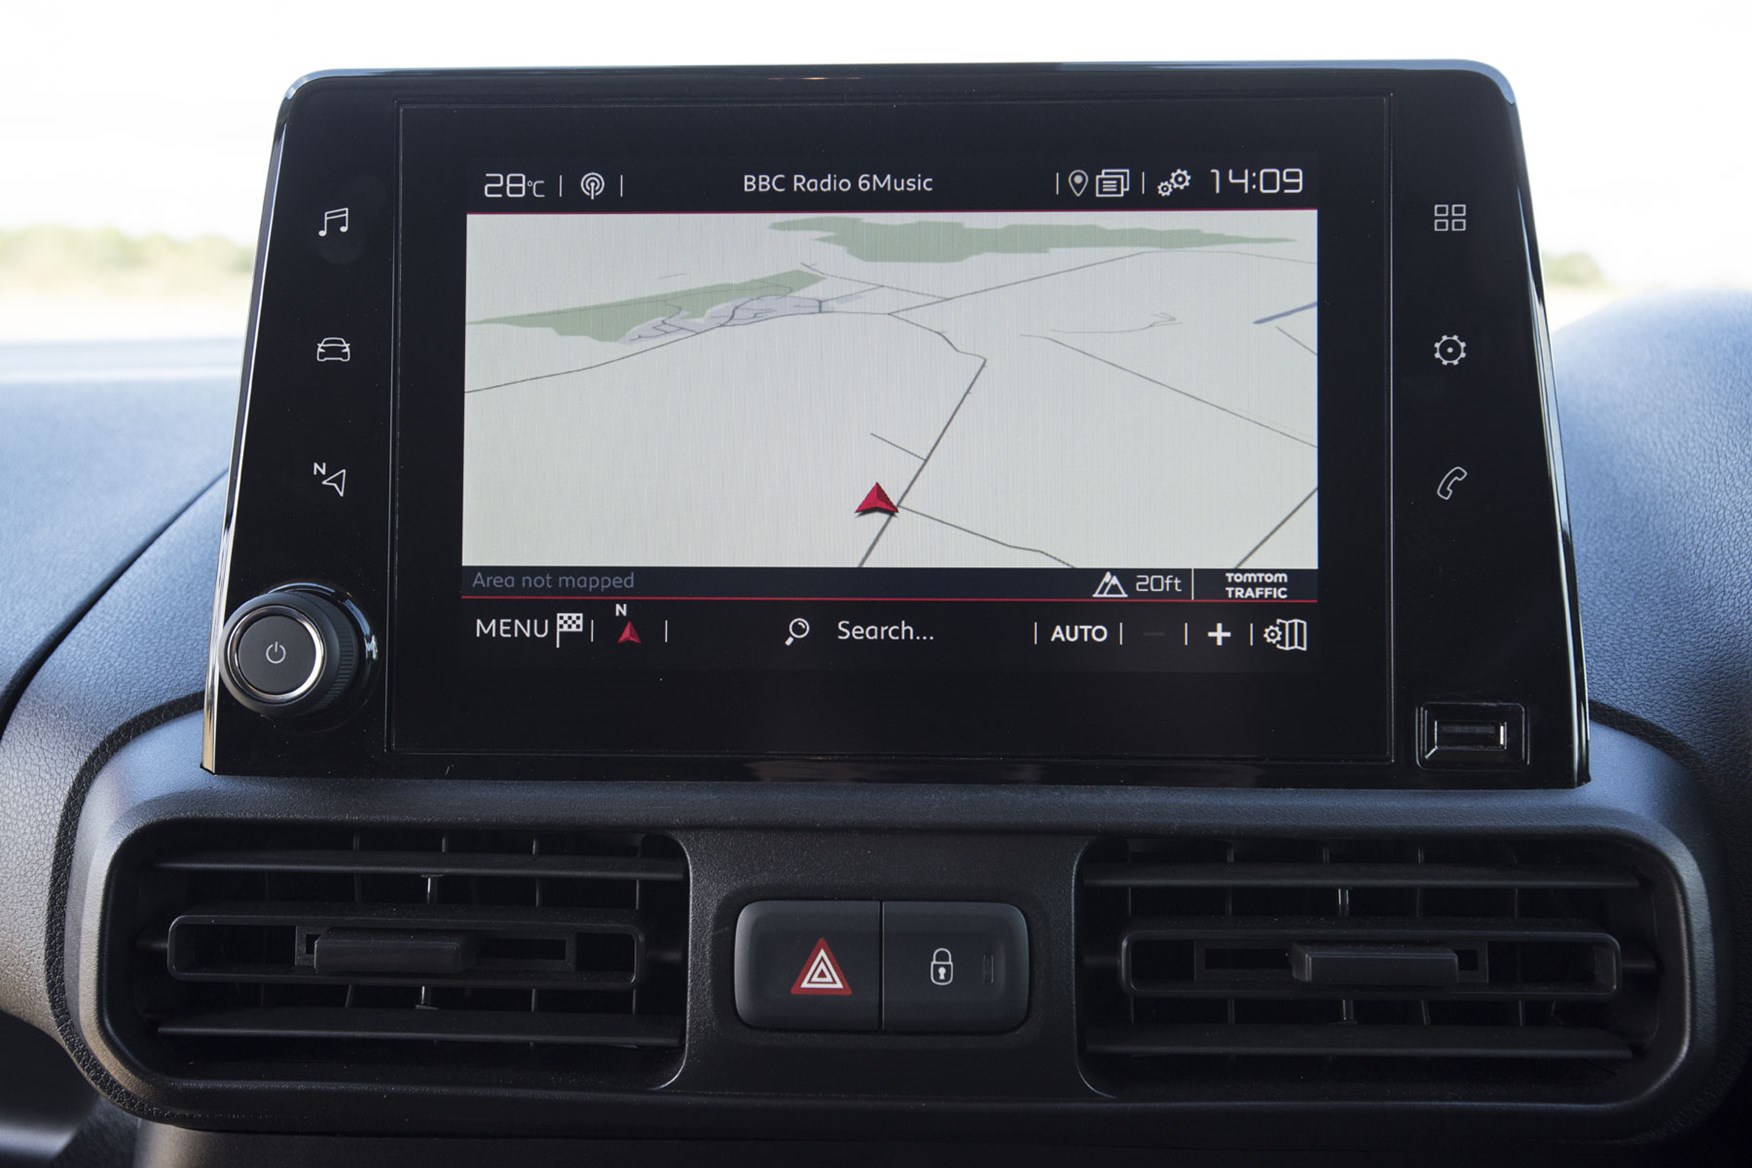 Citroen Berlingo van review - 2019 model, infotainment screen